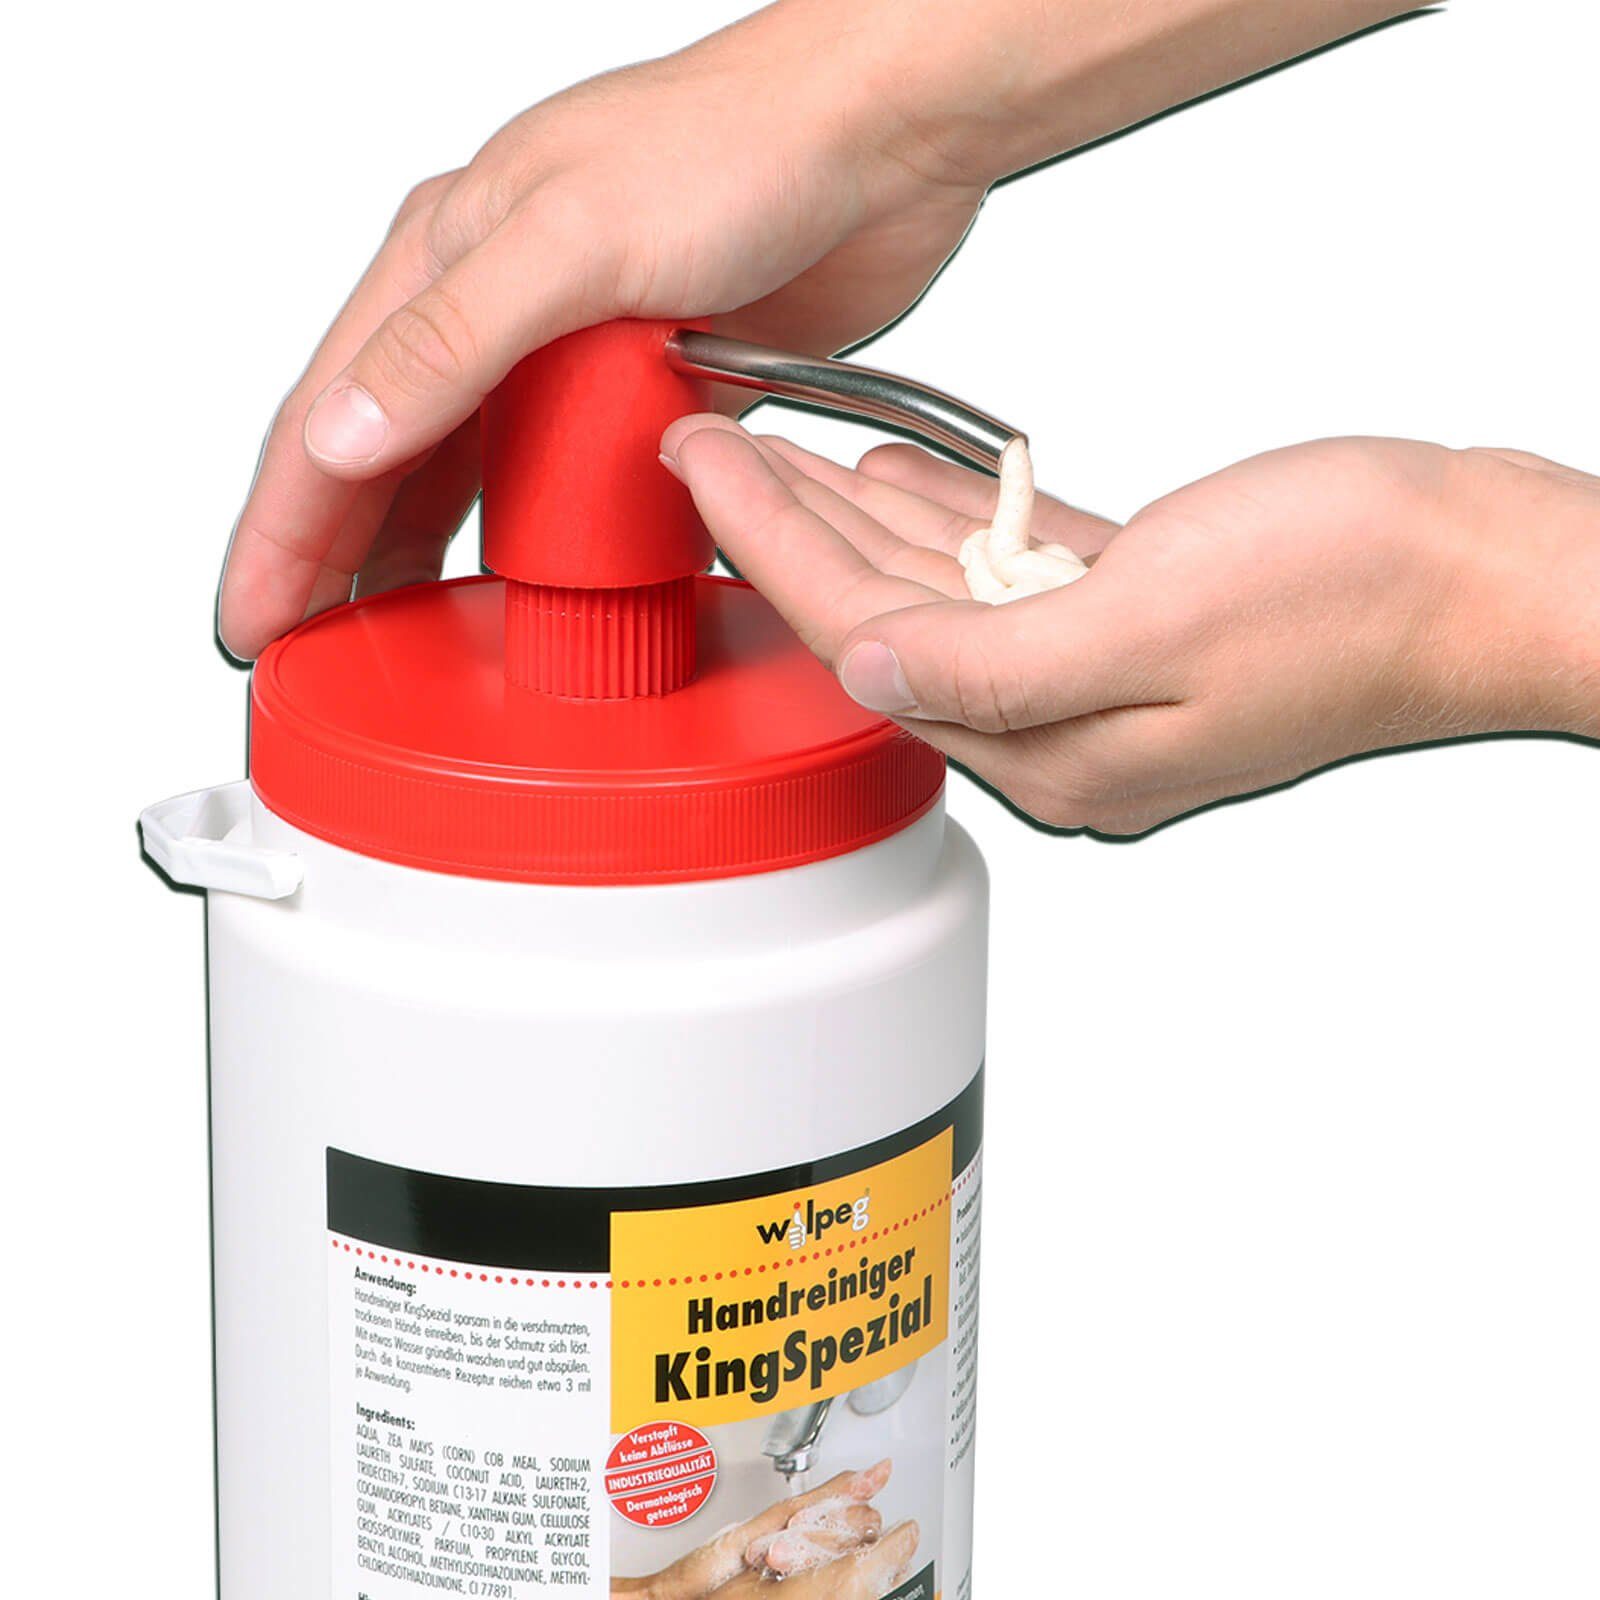 Handcreme wilpeg® KingSpezial reinigt Handwaschpaste 3L+Waschbürste, Handreiniger pflegt